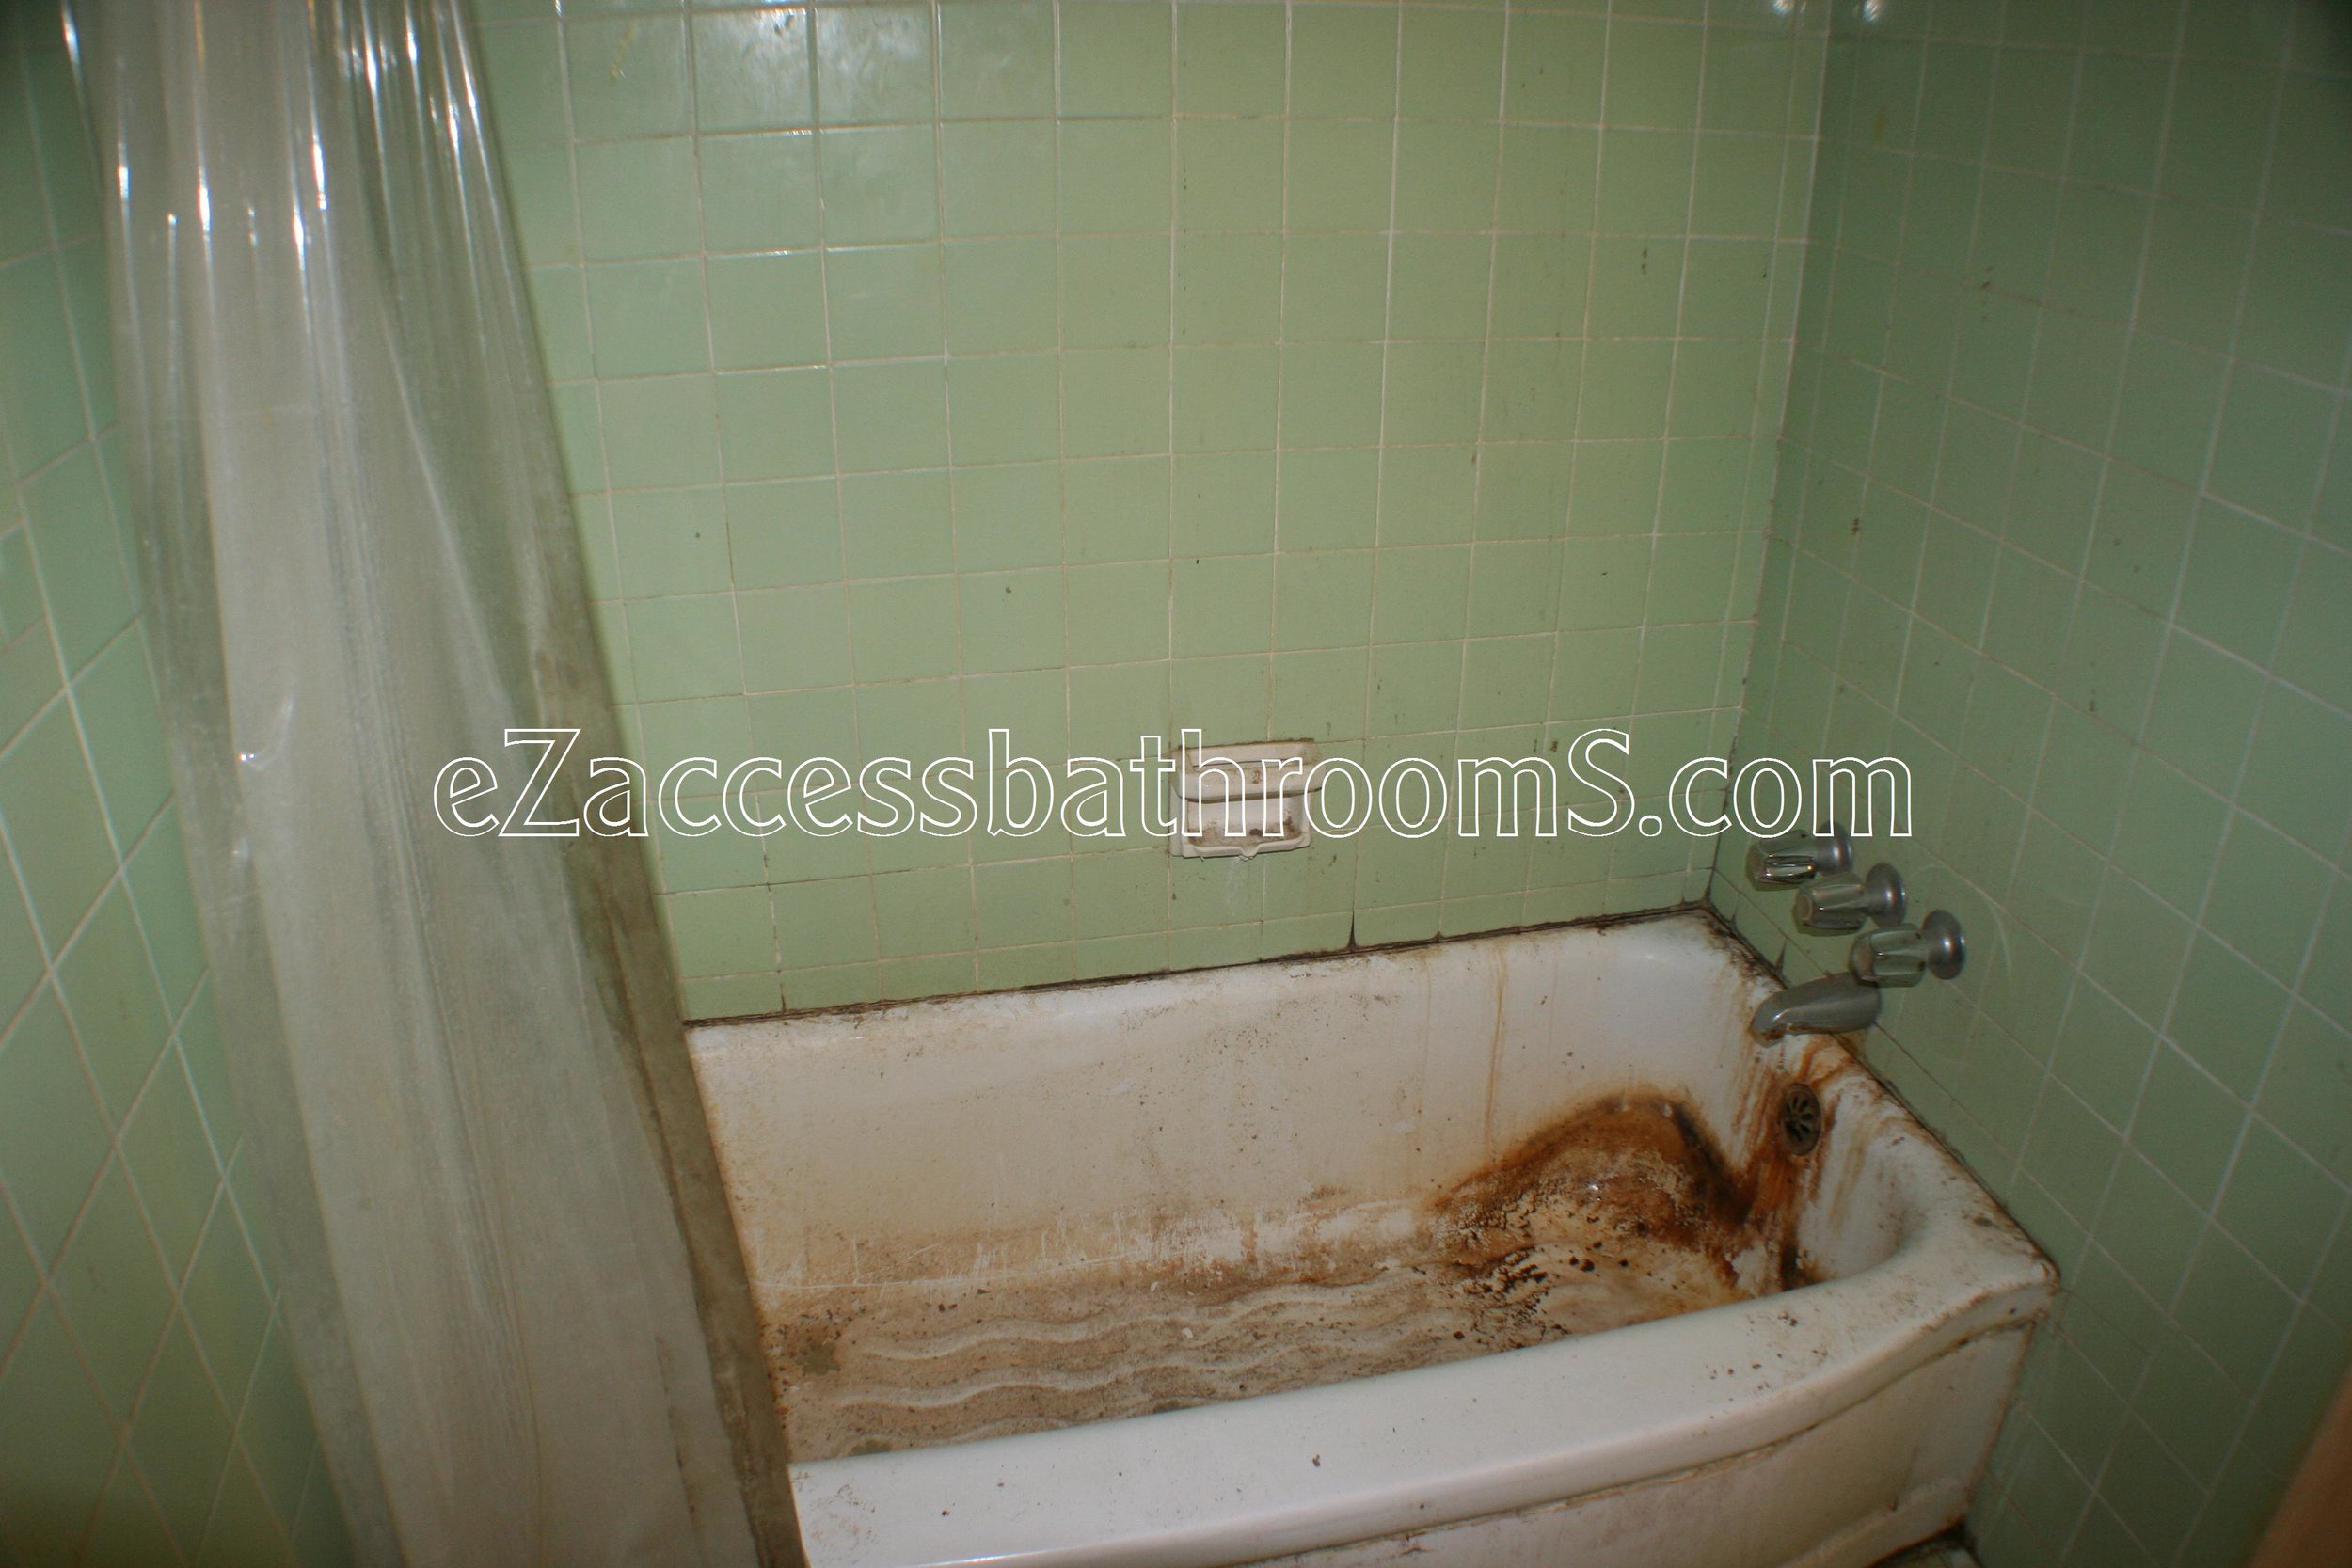 rollin shower ezaccessbathrooms.com 0023.JPG